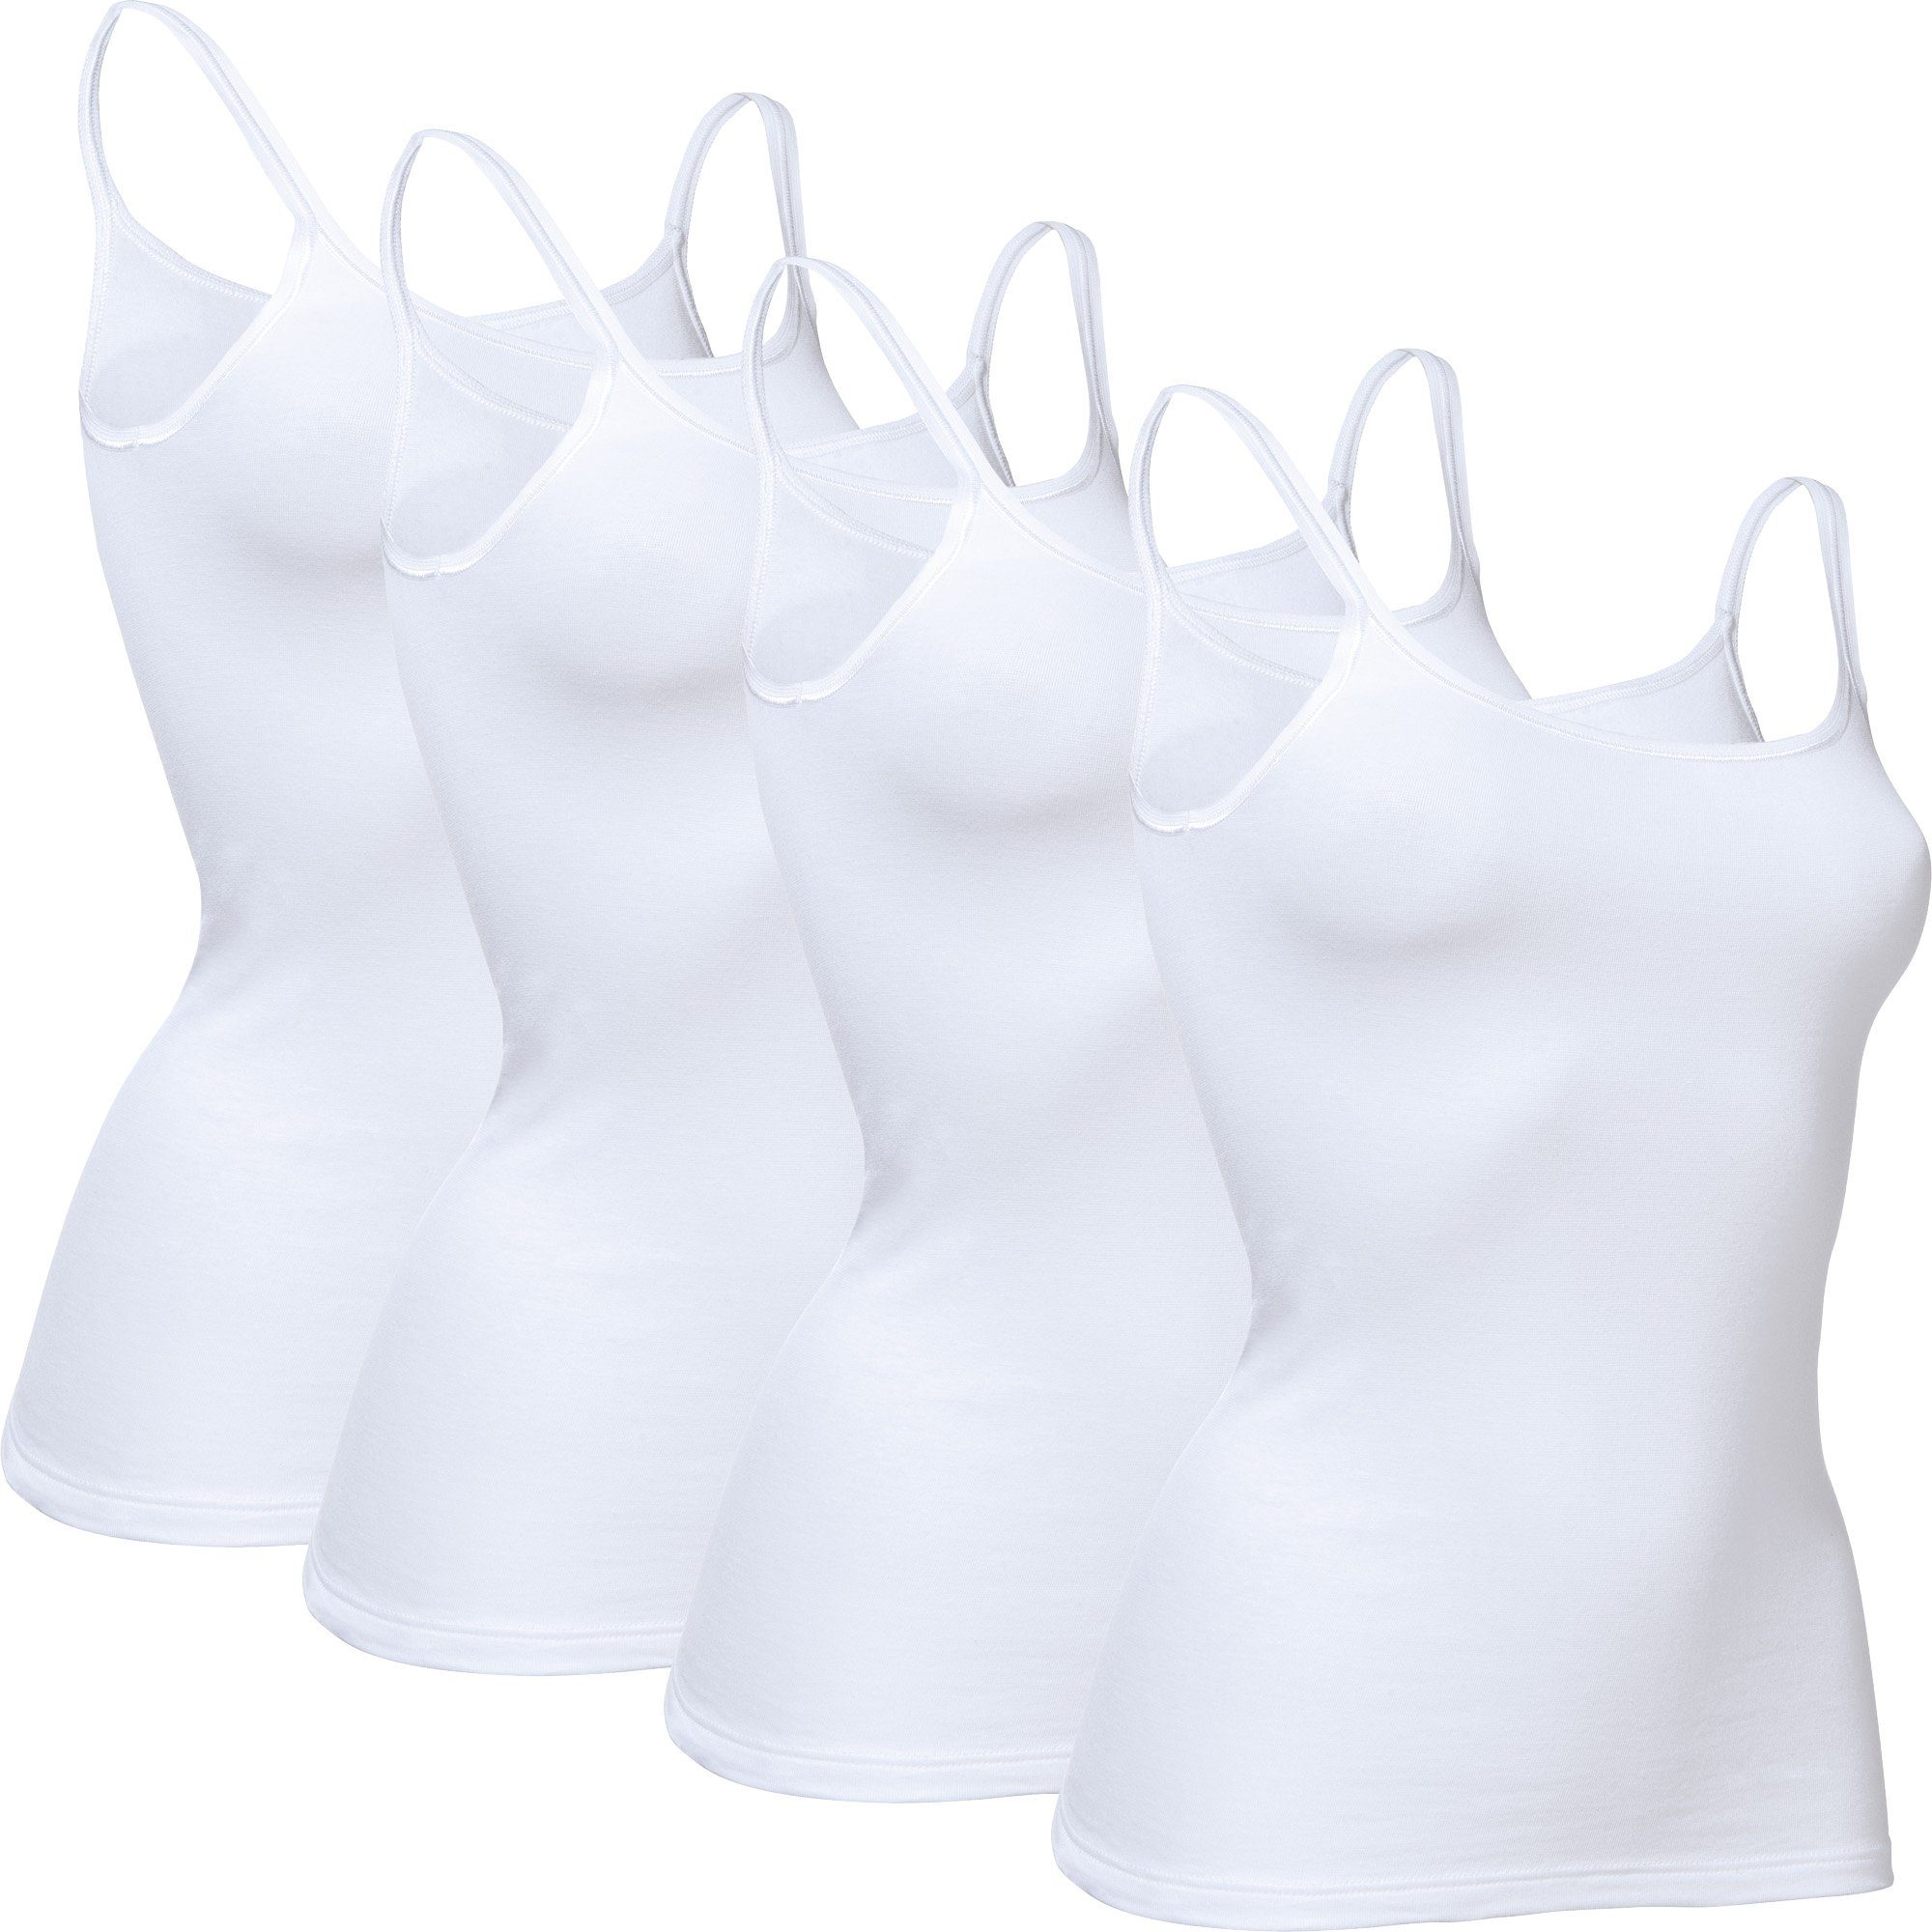 Uni 4er-Pack conta weiß Feinripp Unterhemd Damen-Unterhemd